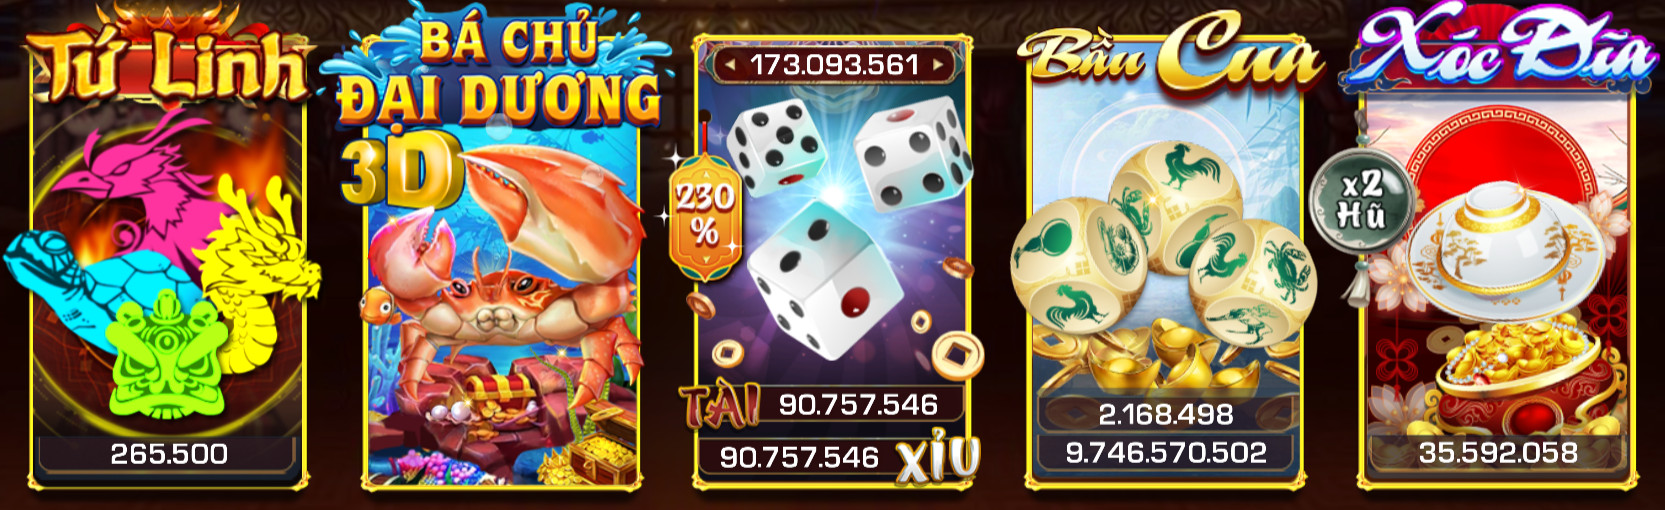 Kinh nghiệm chơi casino cần trang bị game bài đổi thưởng hitclub